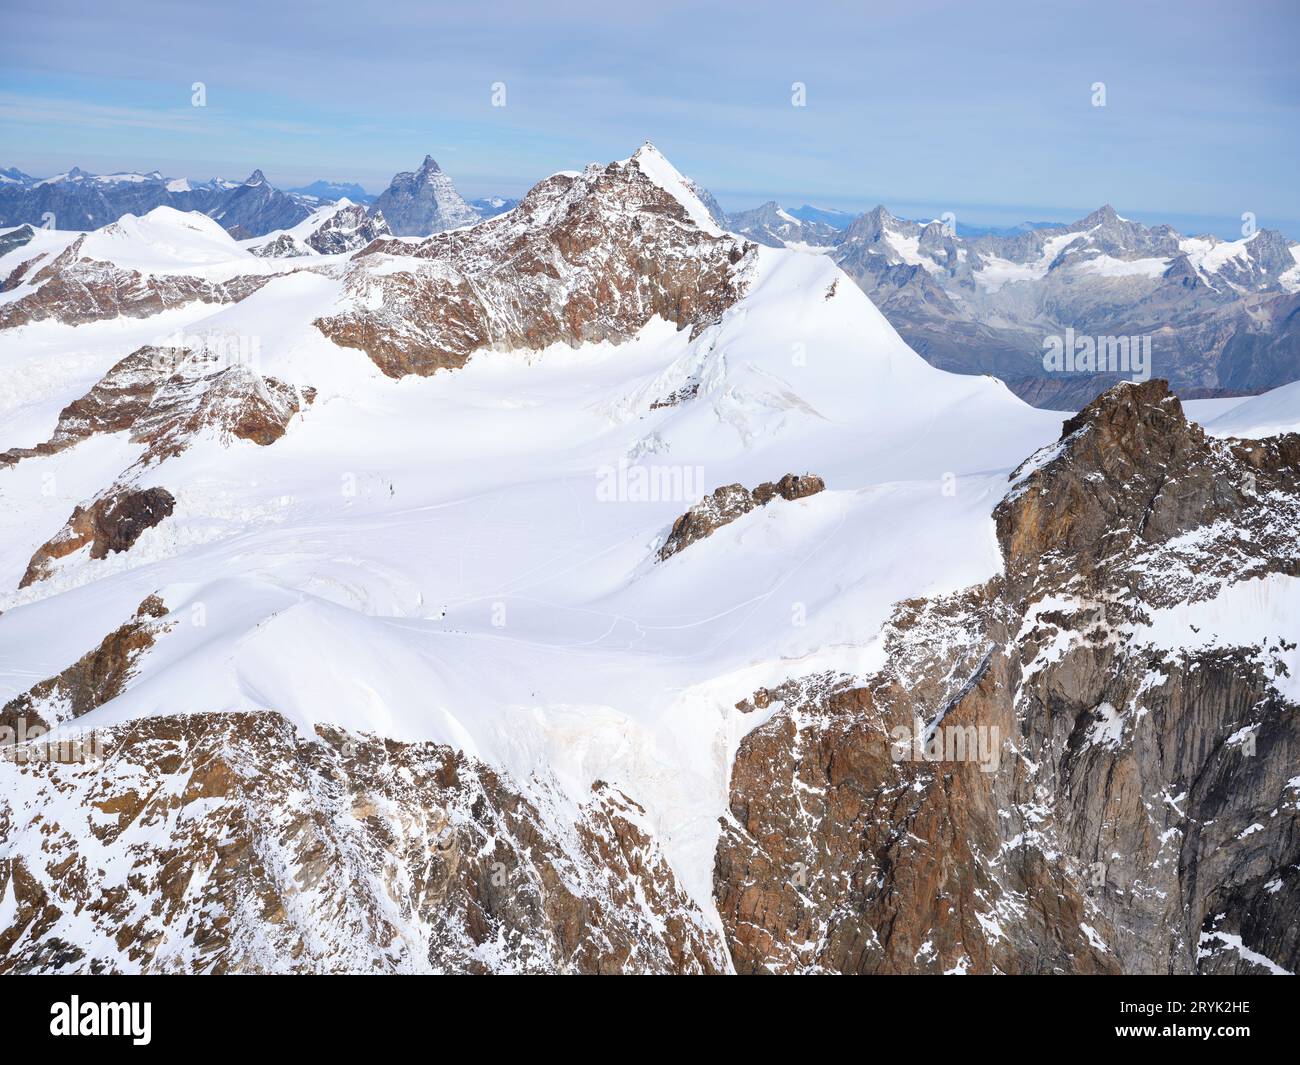 VUE AÉRIENNE. Côté italien du Lyskamm (altitude : 4533m asl) sur le massif du Monte Rosa. Vallée d'Aoste, Italie. Banque D'Images